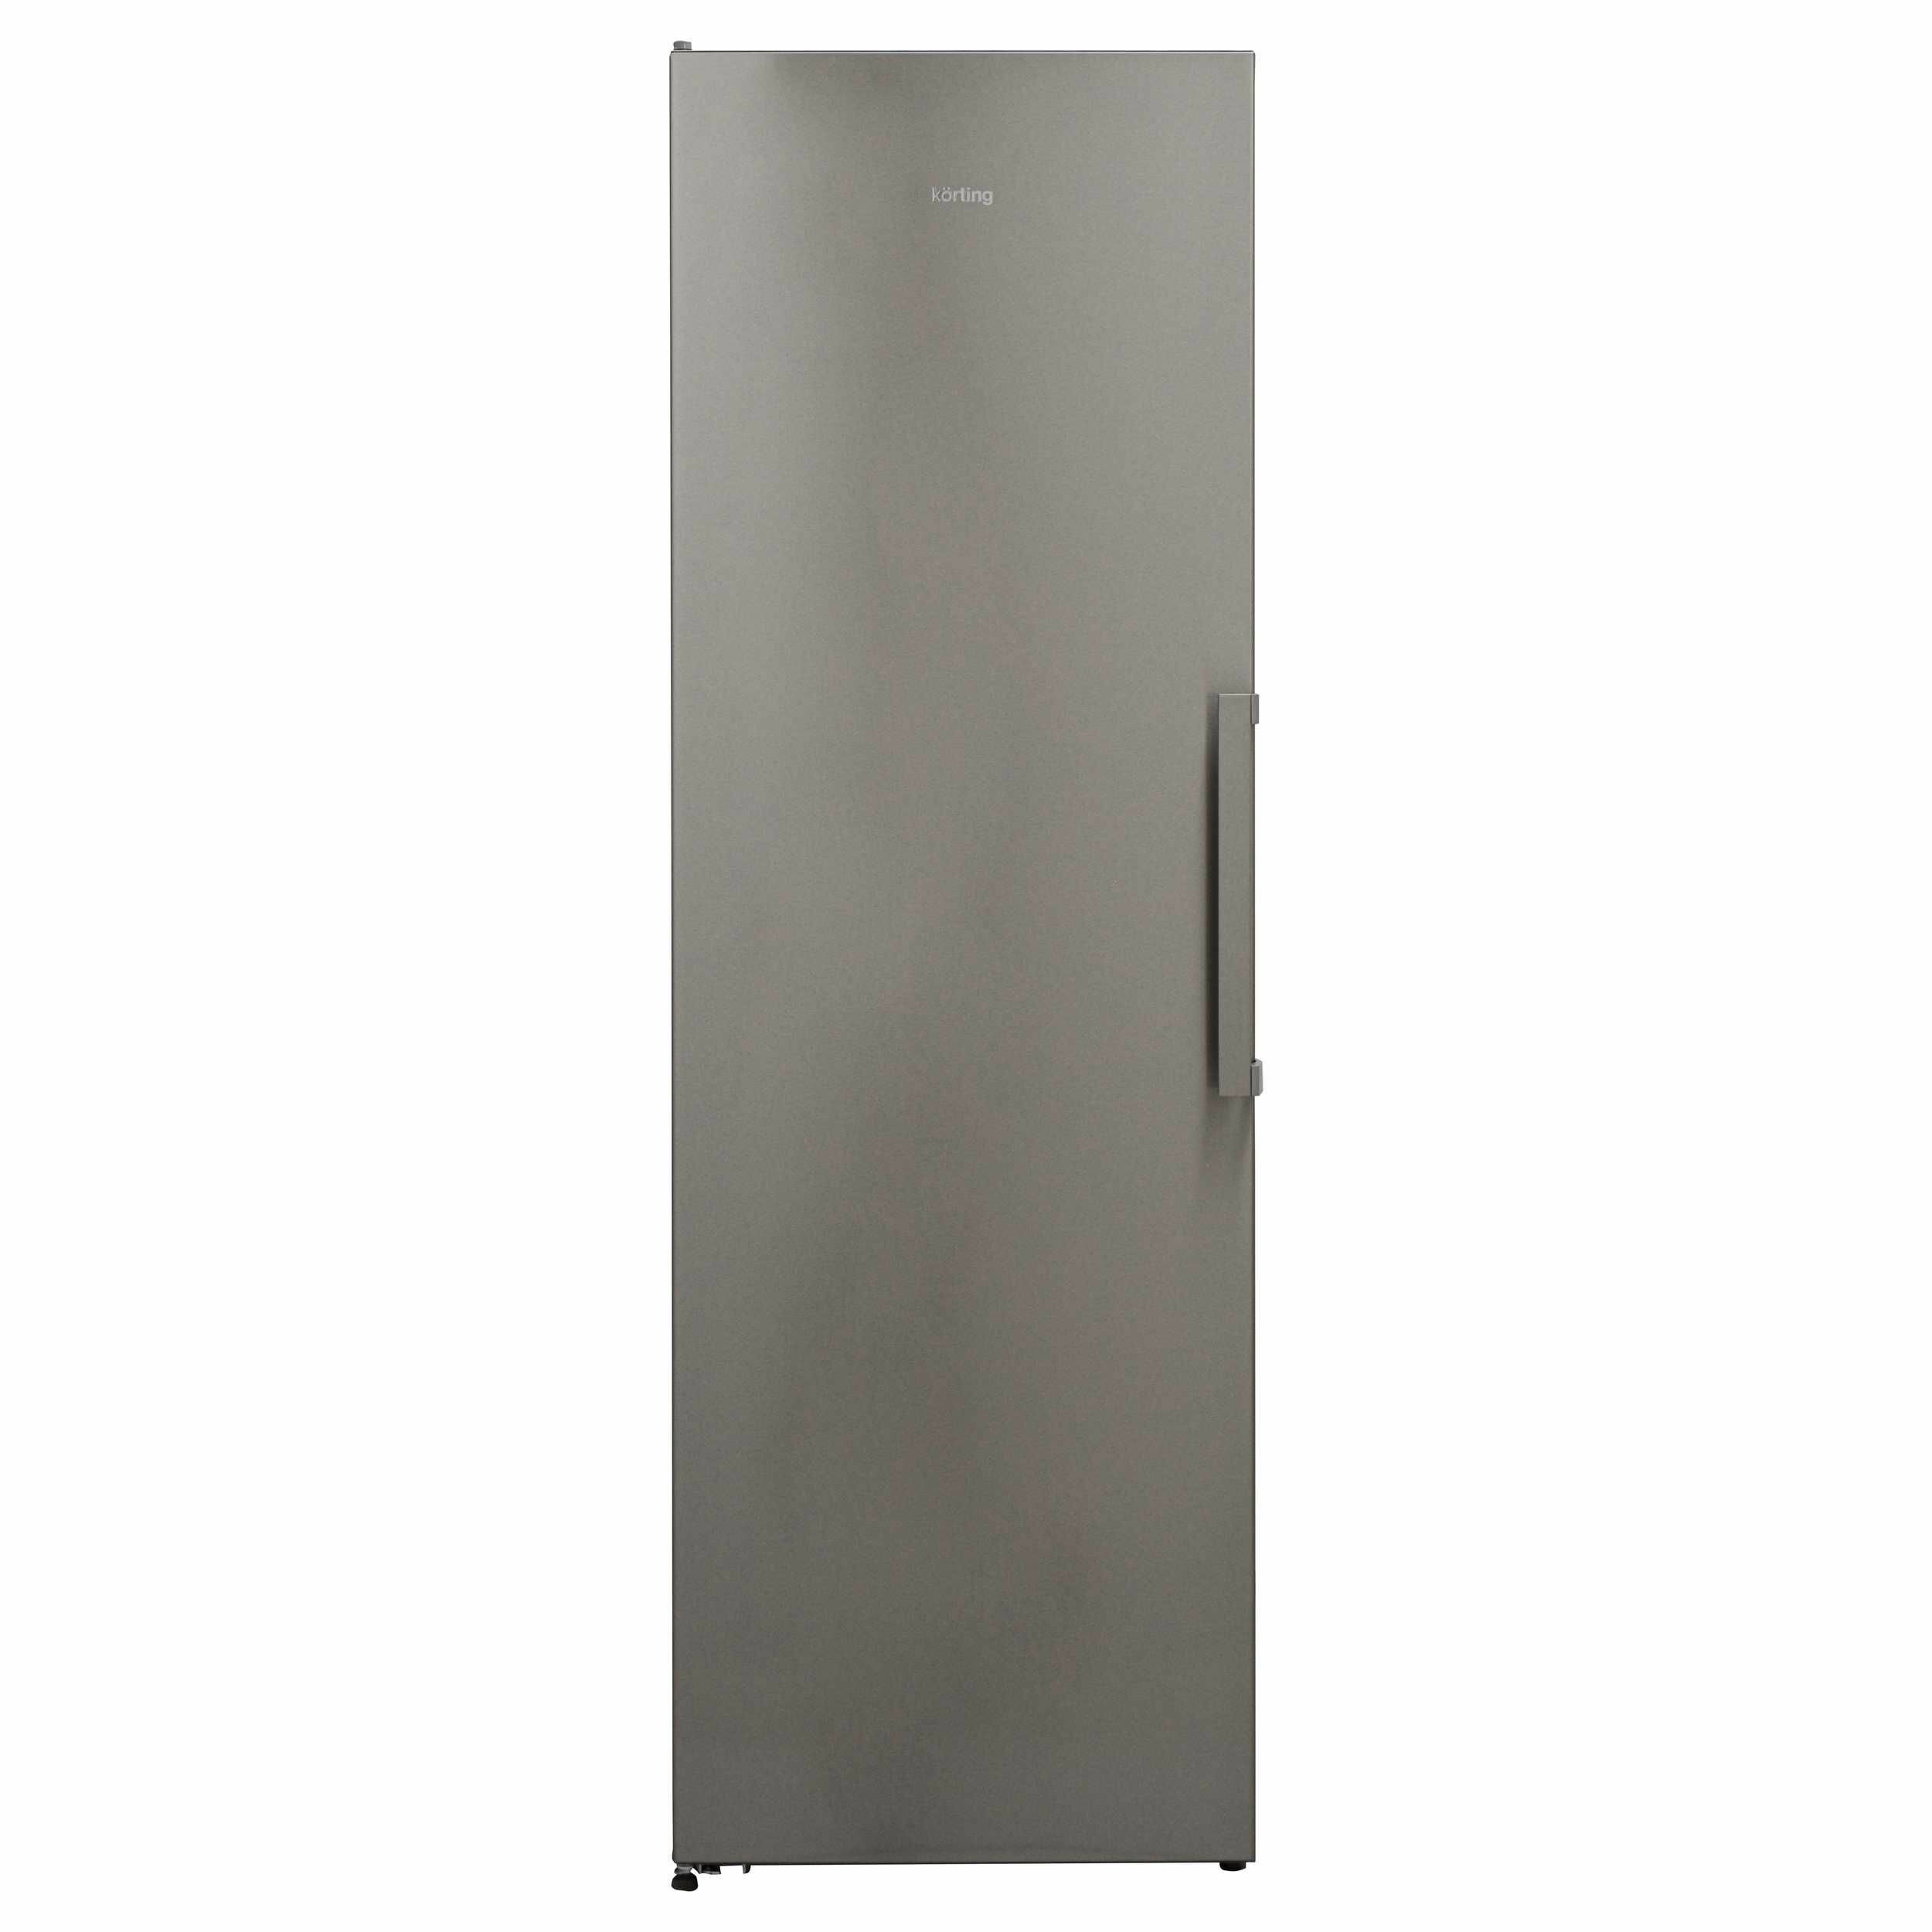 Однокамерный холодильник Korting - фото №3